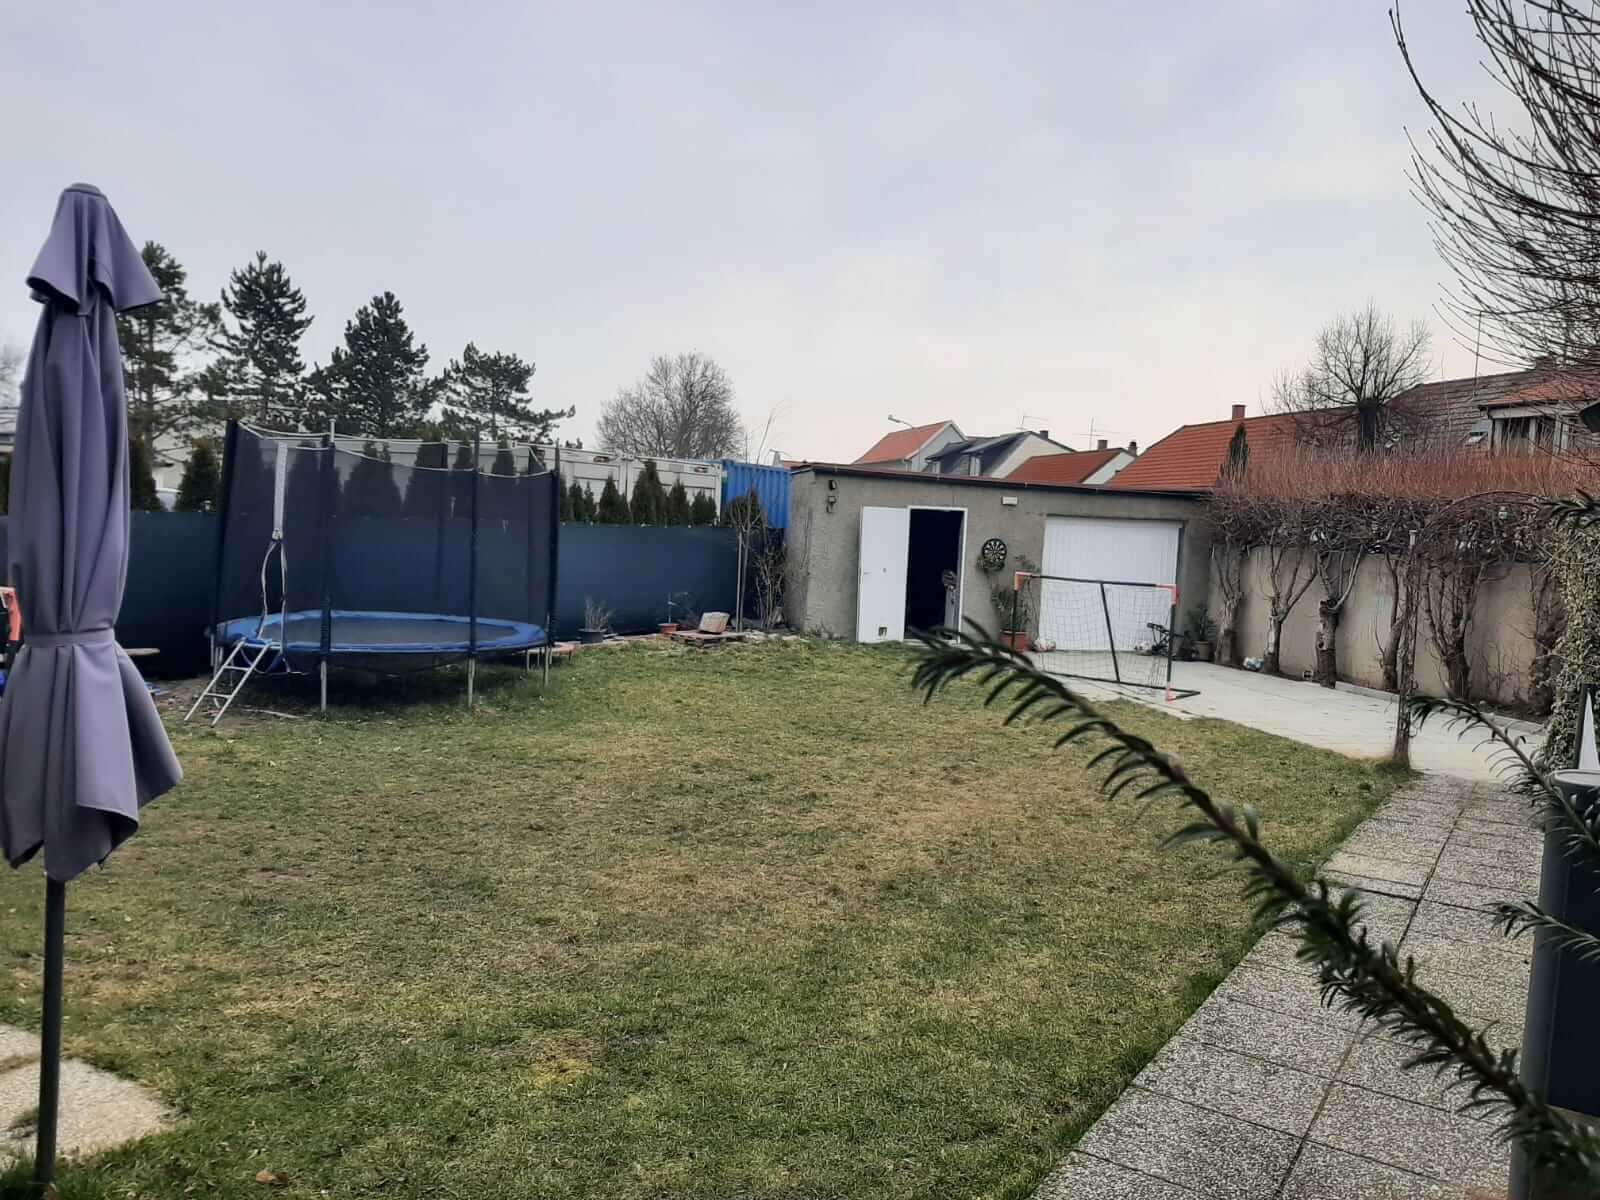 Predaj Rodinného domu v Zurndorfe, Rakúsko, len 22km od BA, 3 izbový, obytná 78m2, pozemok 385m2-1